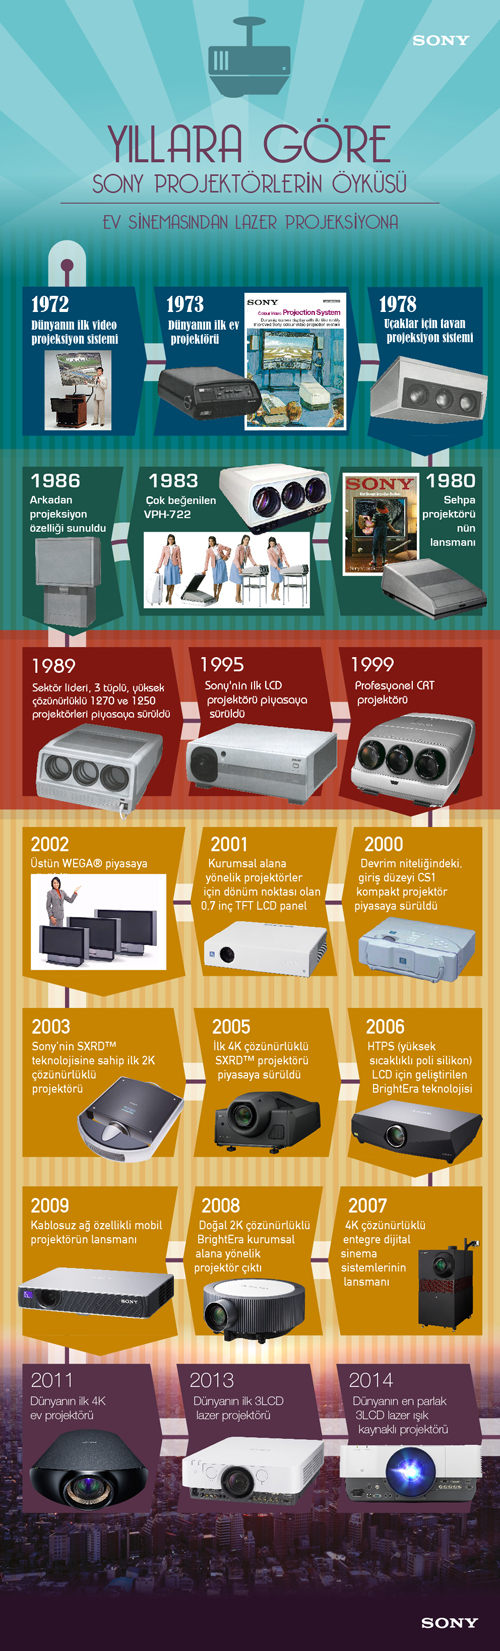 Yıllara-göre-Sony-projektörlerin-öyküsü_1